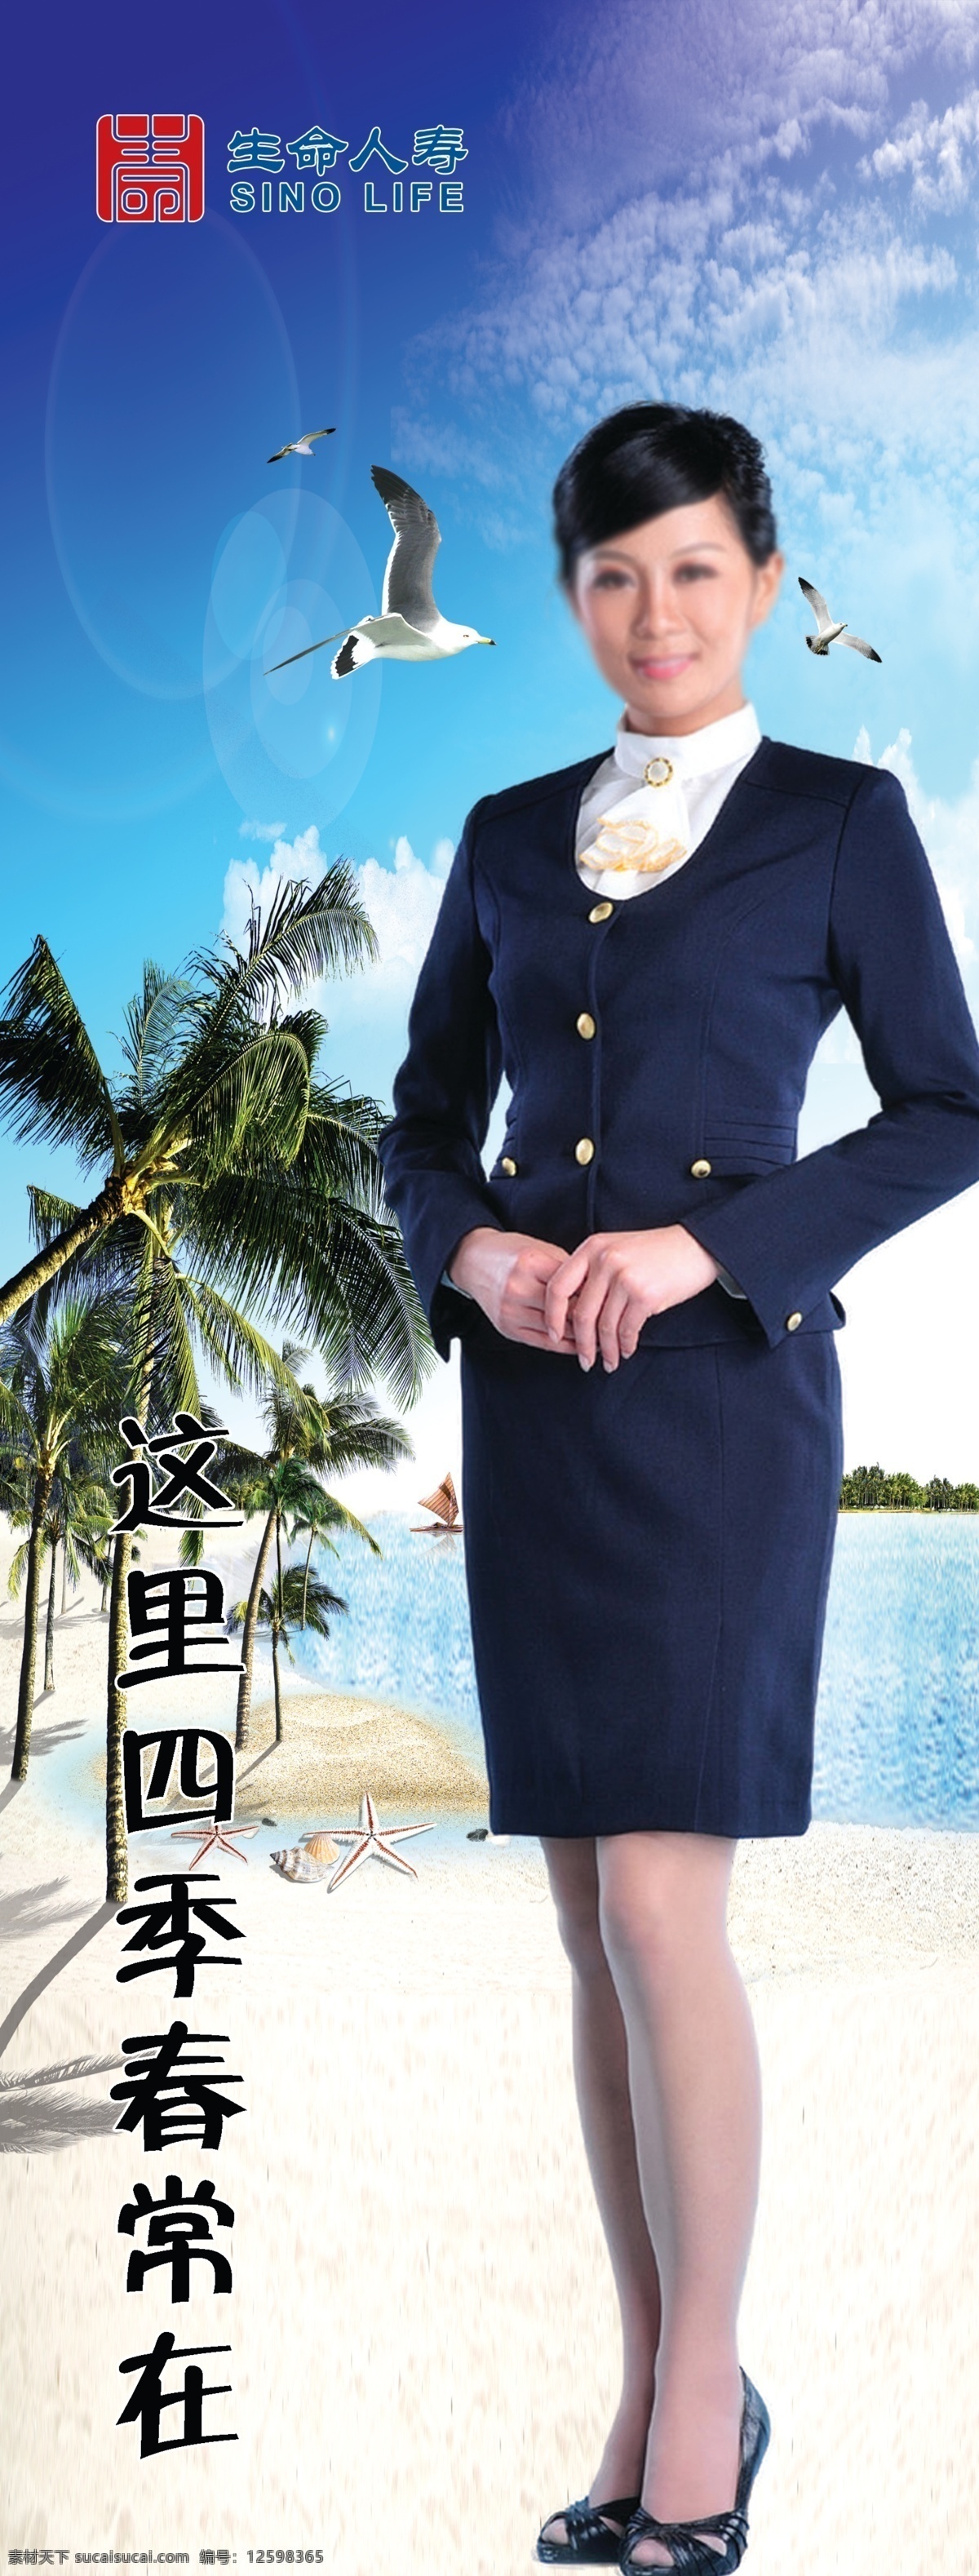 海南 之旅 广告设计模板 海滩 空姐 旅游 美女 椰树 源文件 南之旅 展板模板 其他展板设计